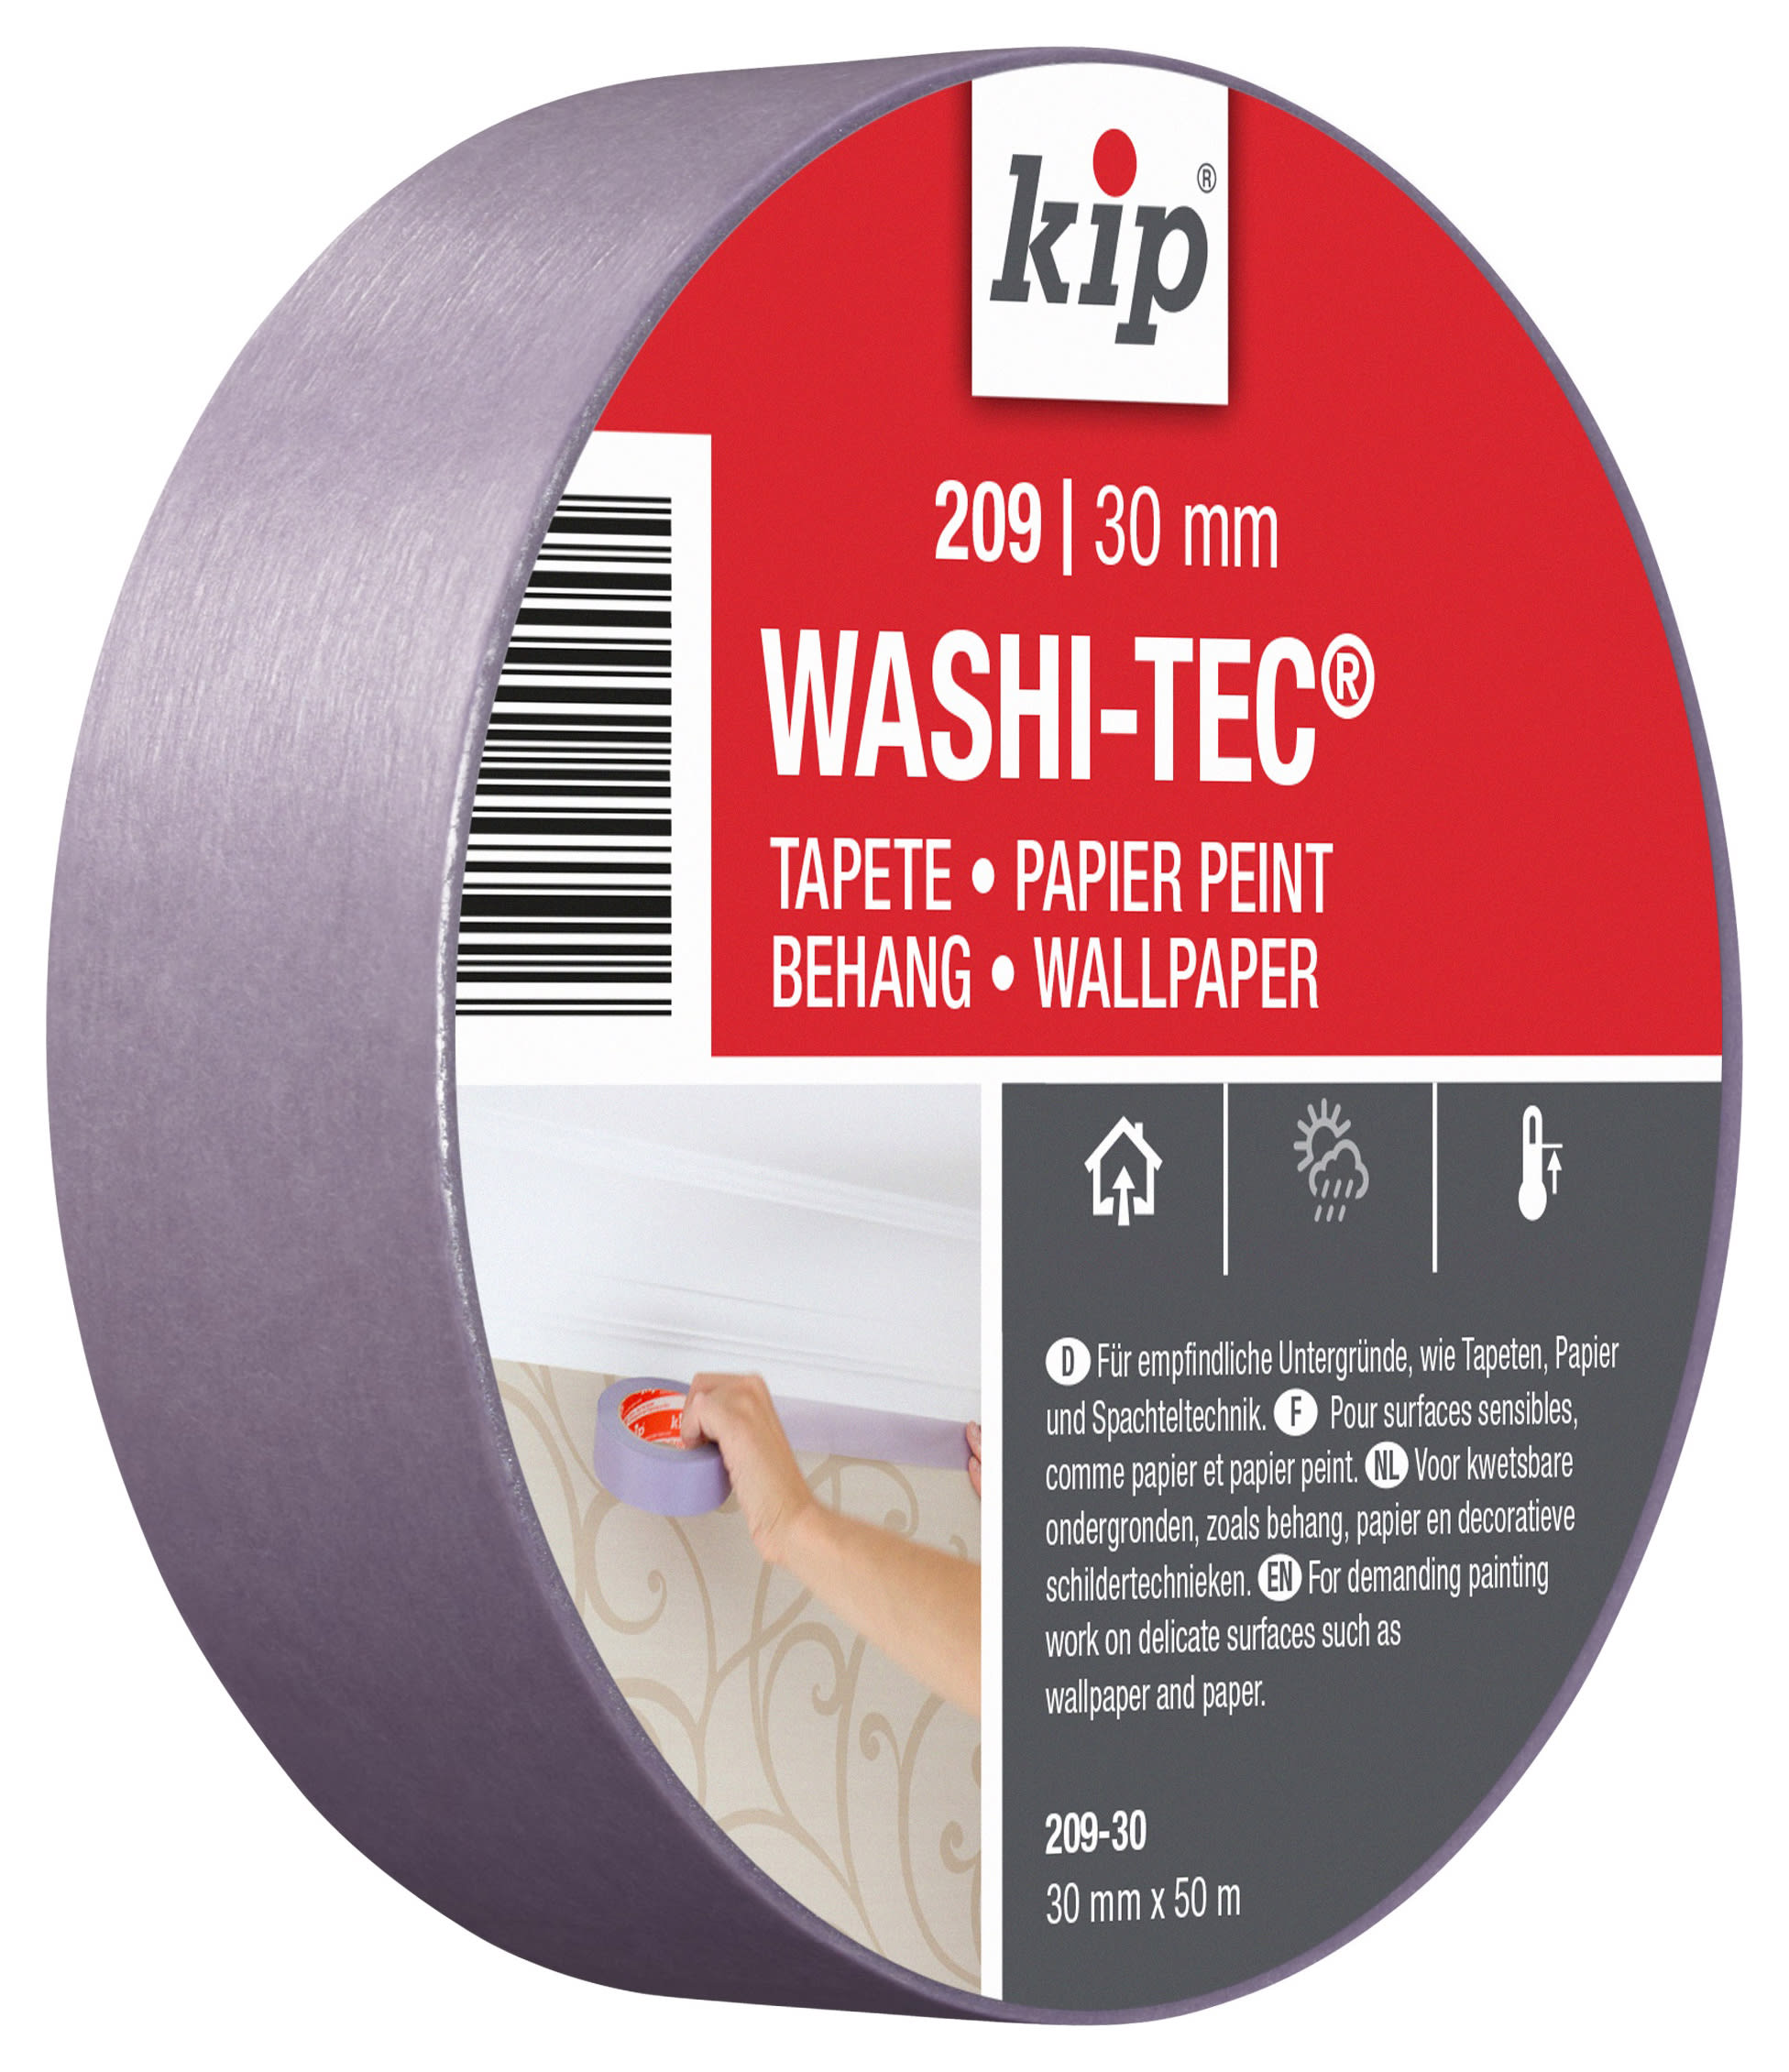 Kip Washi-Tec Low Tac Masking Tape - 30mm